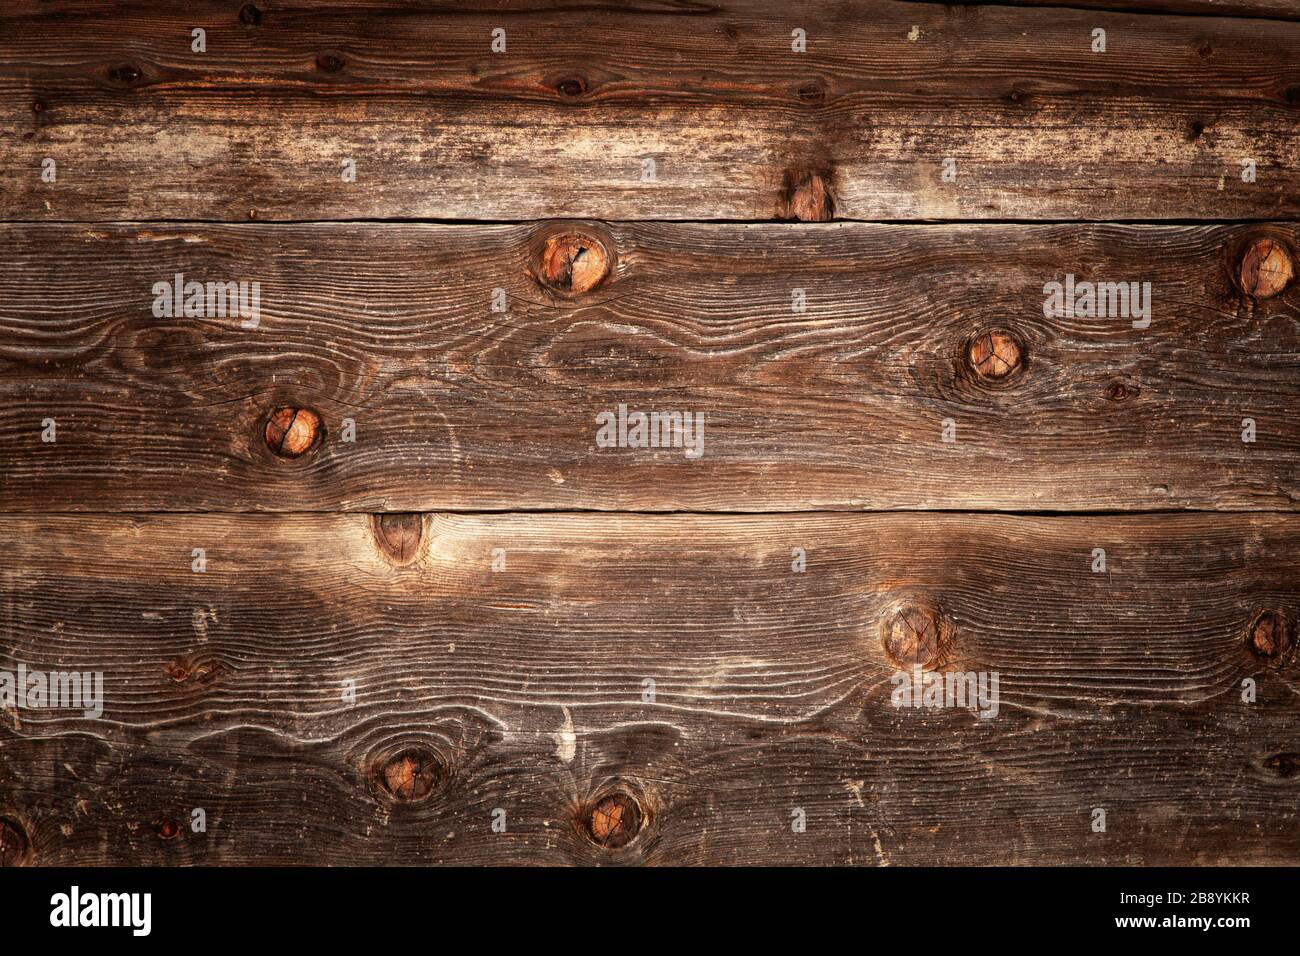 Dark wooden background Stock Photo